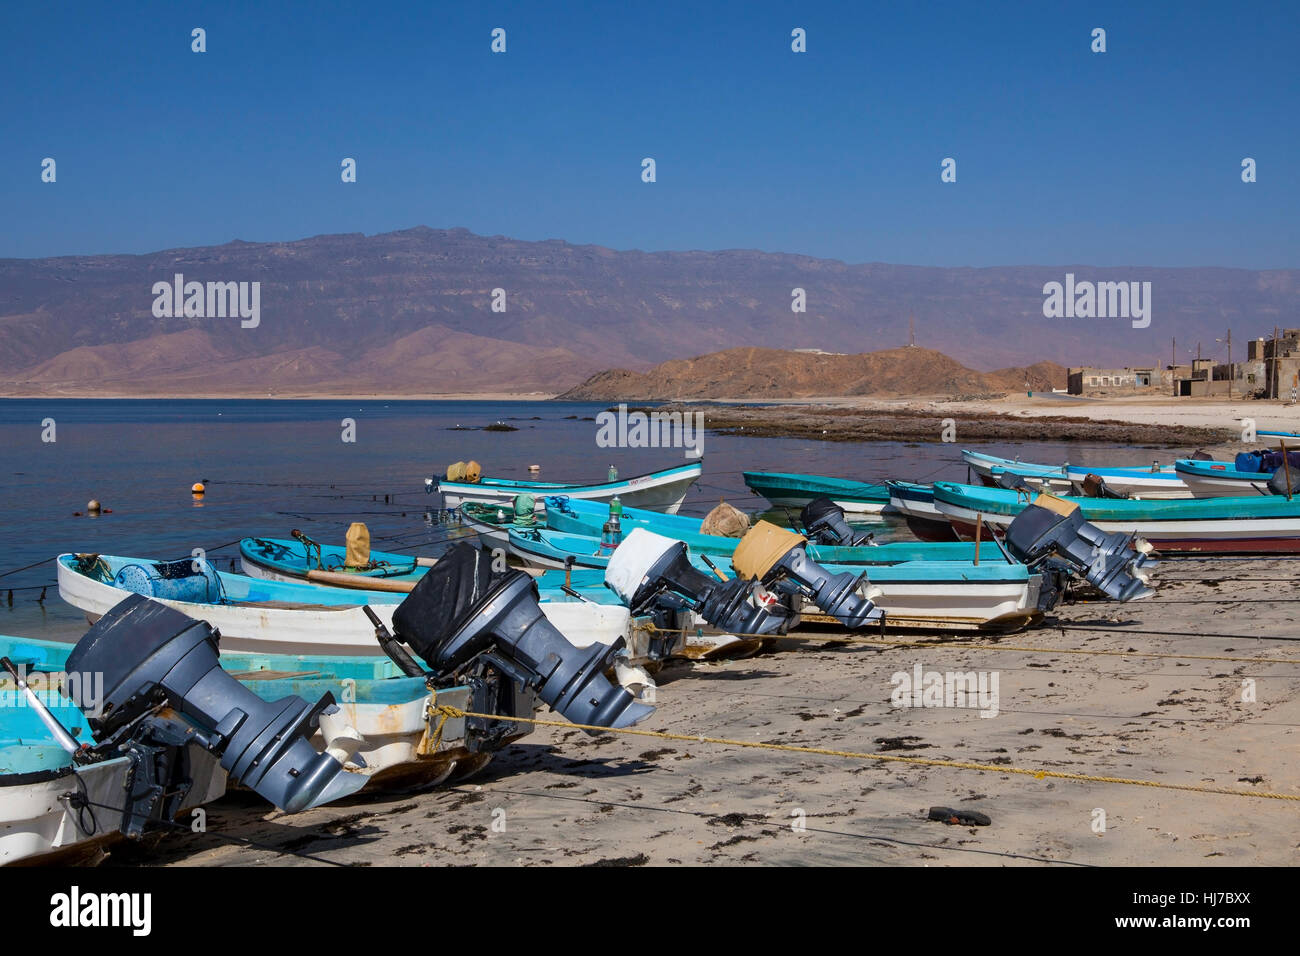 Las pequeñas embarcaciones pesqueras en Mirbat, Dhofar, Omán Foto de stock